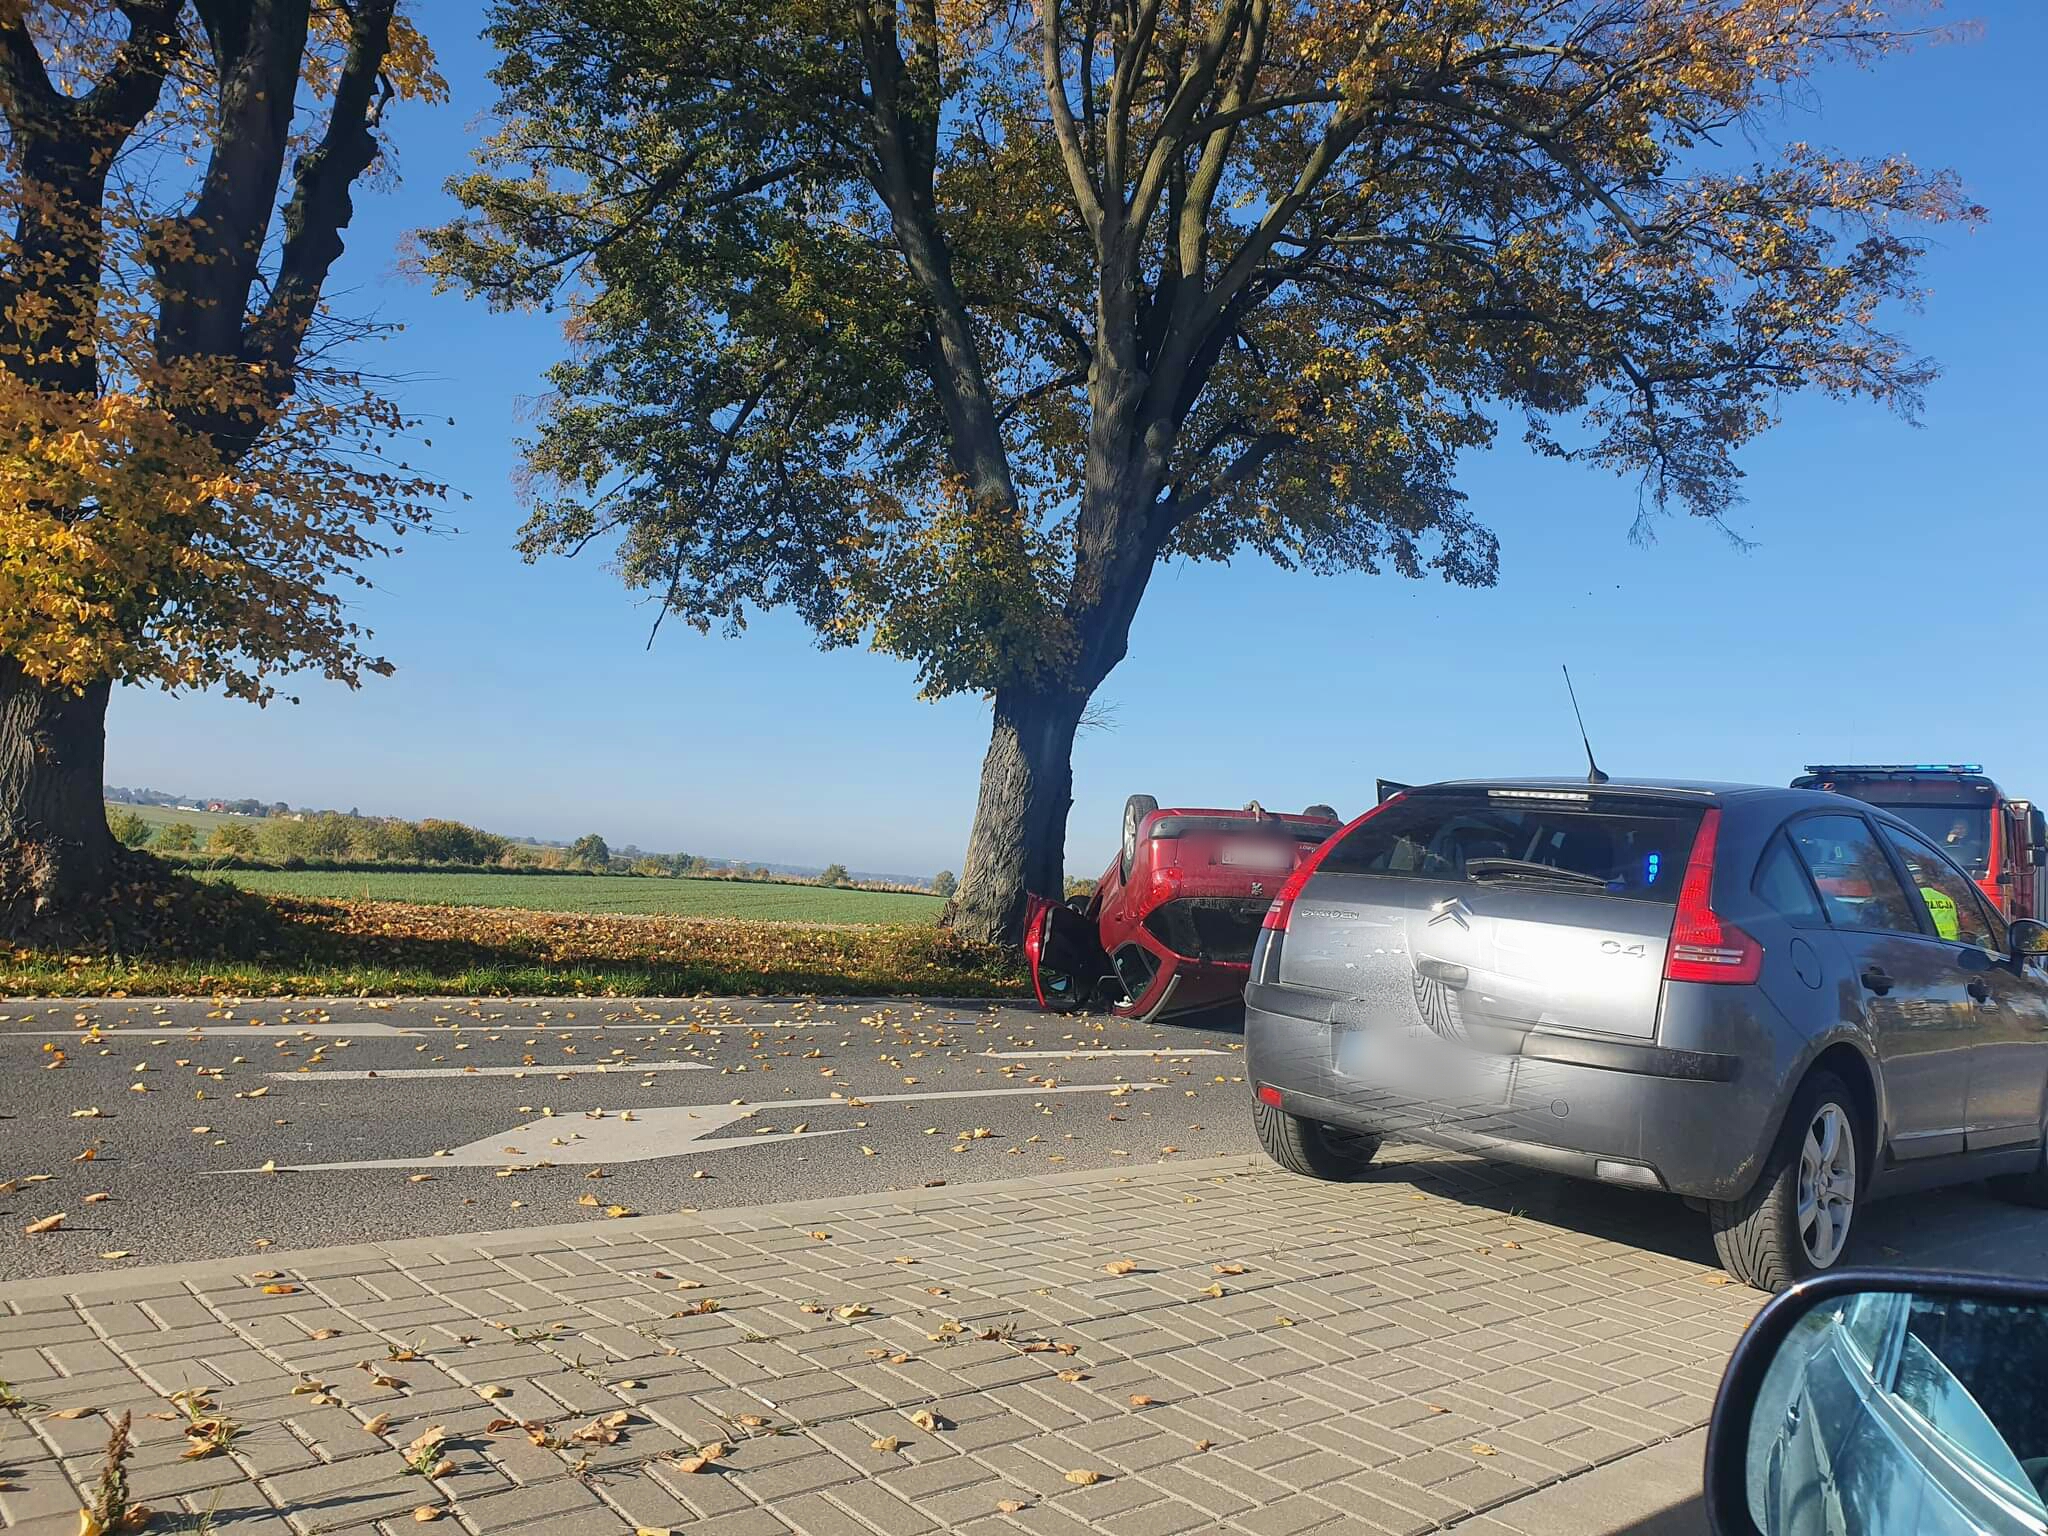 Źle poczuł się za kierownicą. Peugeot zjechał z jezdni, uderzył w drzewo i dachował (zdjęcia)